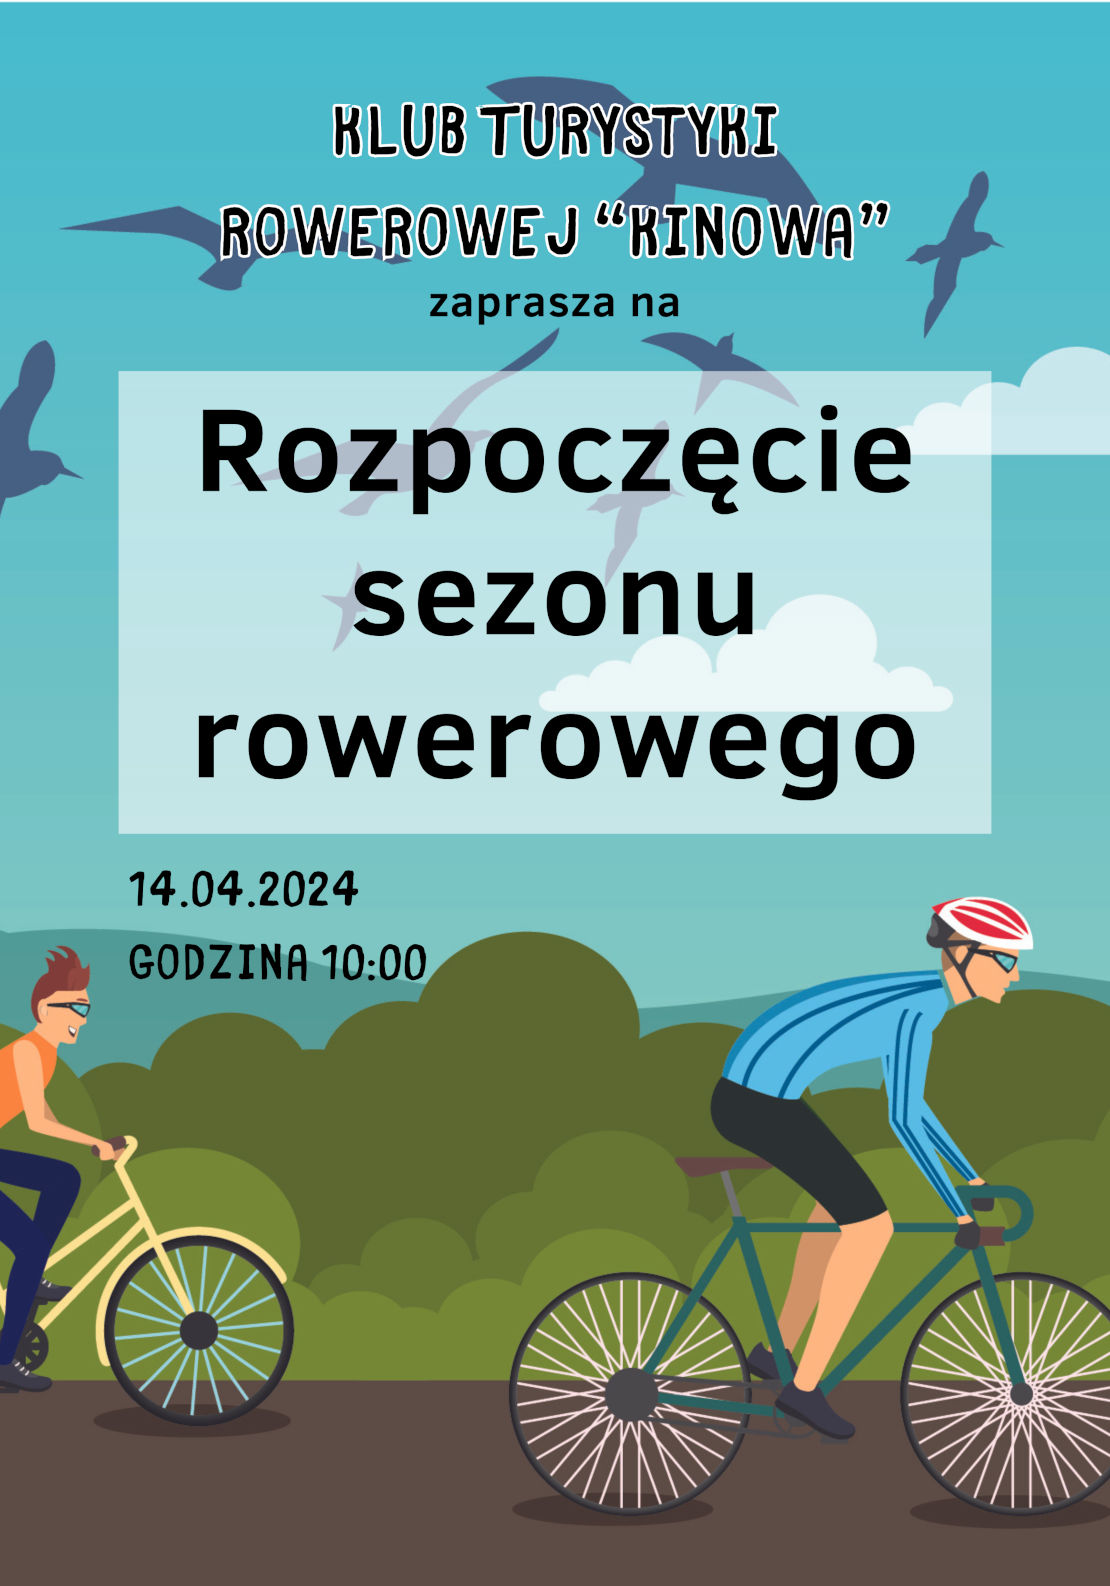 Grafika przedstawia dwóch rowerzystów jadących drogą. Na tle nieba i ptaków jest napis: Klub Turystyki Rowerowej "Kinowa" zaprasza na rozpoczęcie sezony rowerowego. 14.04.2024 r. o godzinie 10:00.